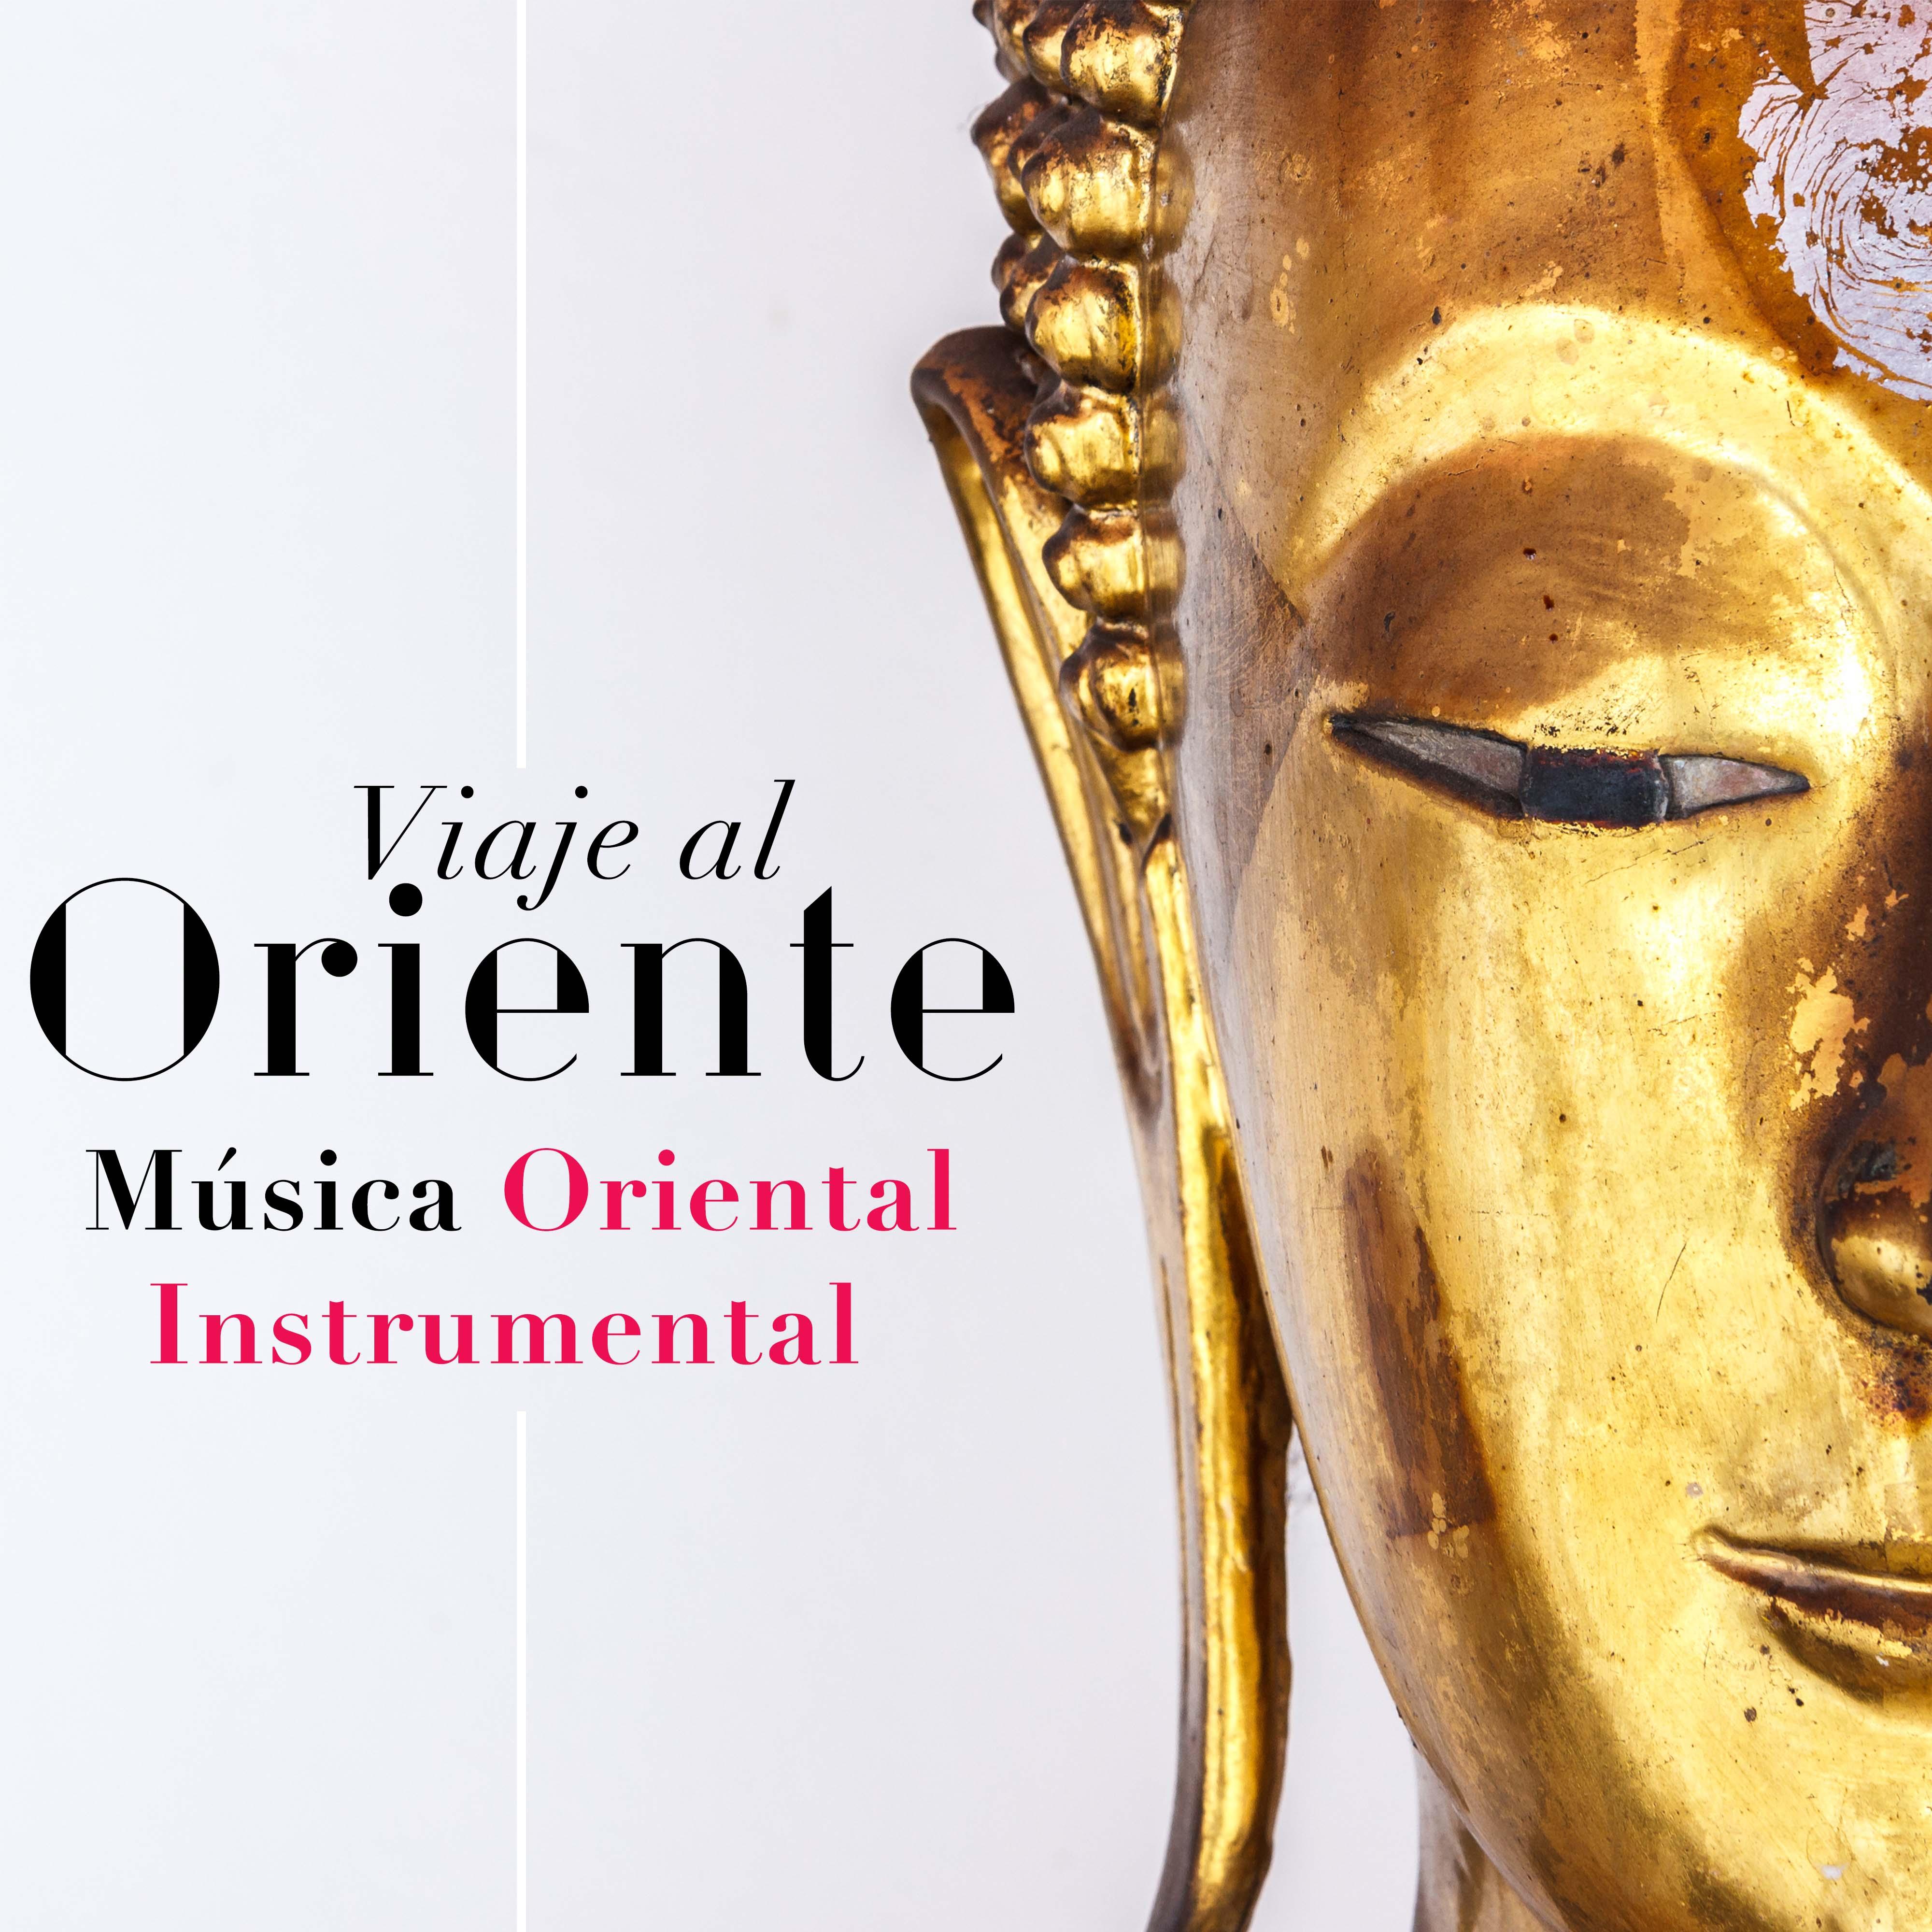 Viaje al Oriente - Musica Oriental Instrumental de Relajacion de Asia, India, Japón, China y el Tíbet